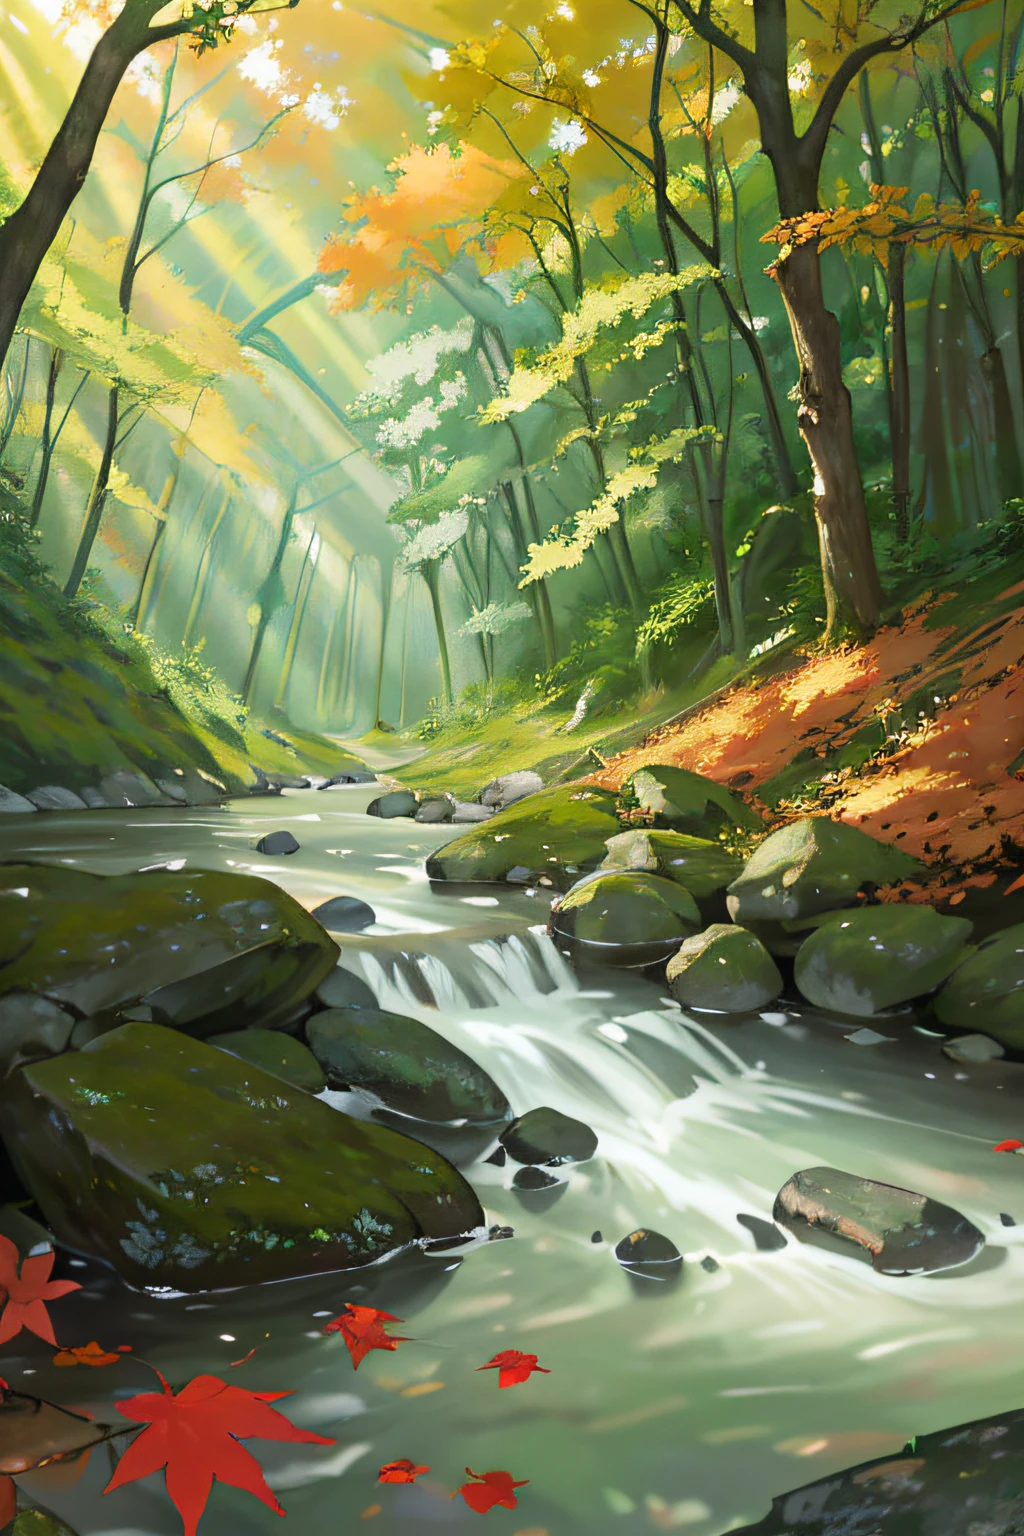 숲의 흐름 강 정신 아름다운 빛 나뭇잎 자연의 아름다움 경이로움 마술 붉은 잎 노란 잎 녹색 숲 조명 효과 신비로운 분위기 수면 강 바위 그림자 구성 다른 세상의 경험